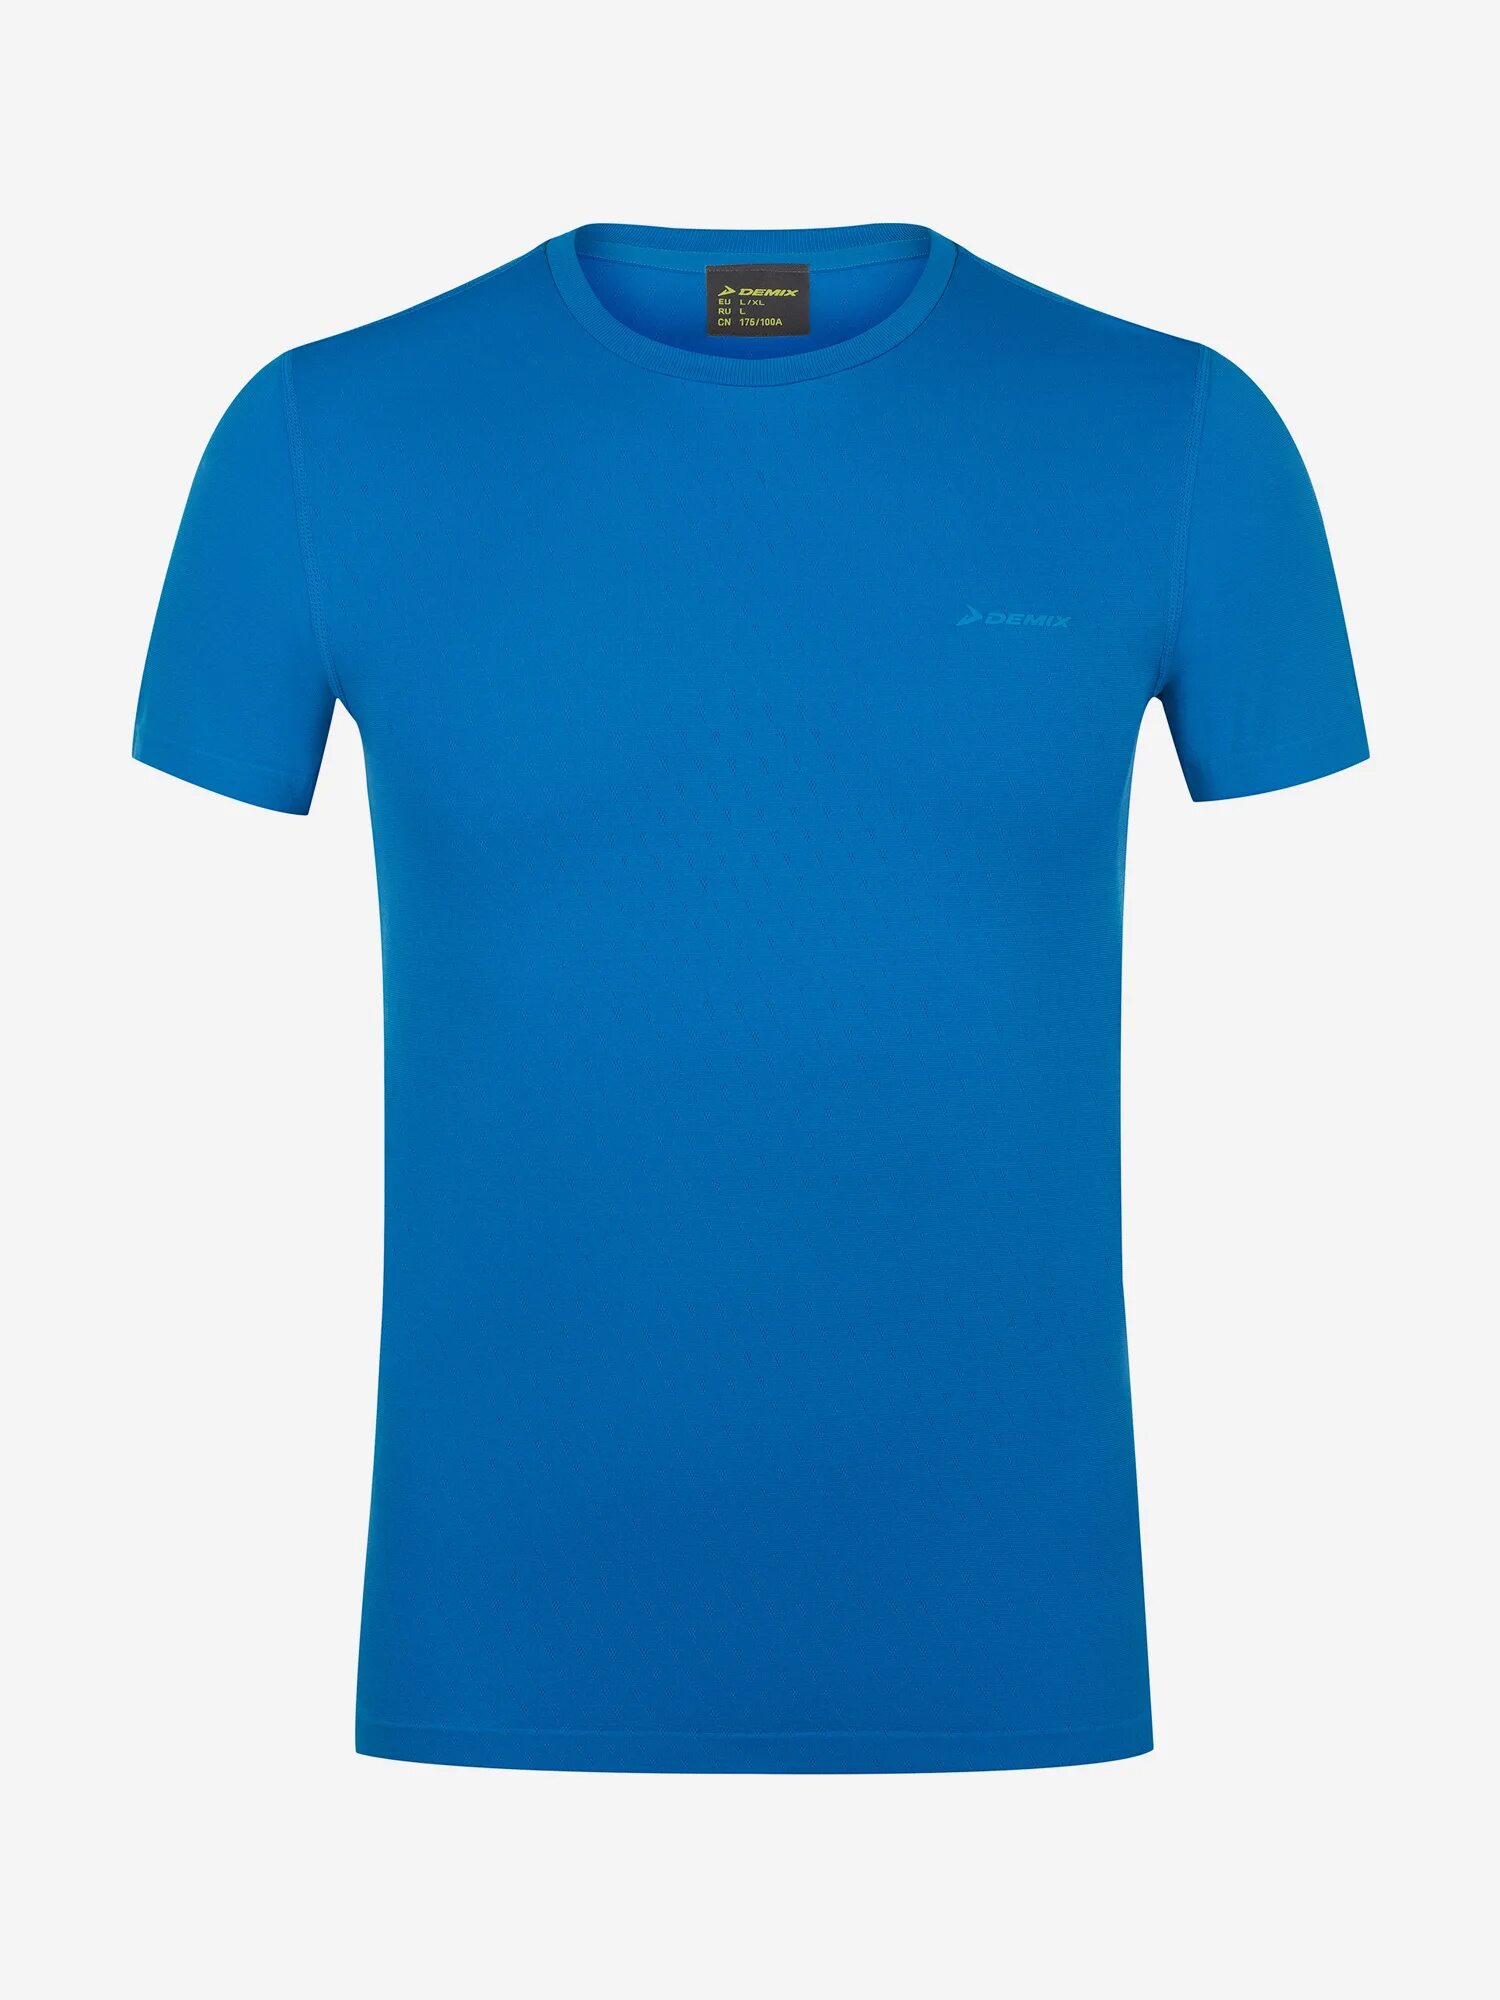 Синяя футболка мужская купить